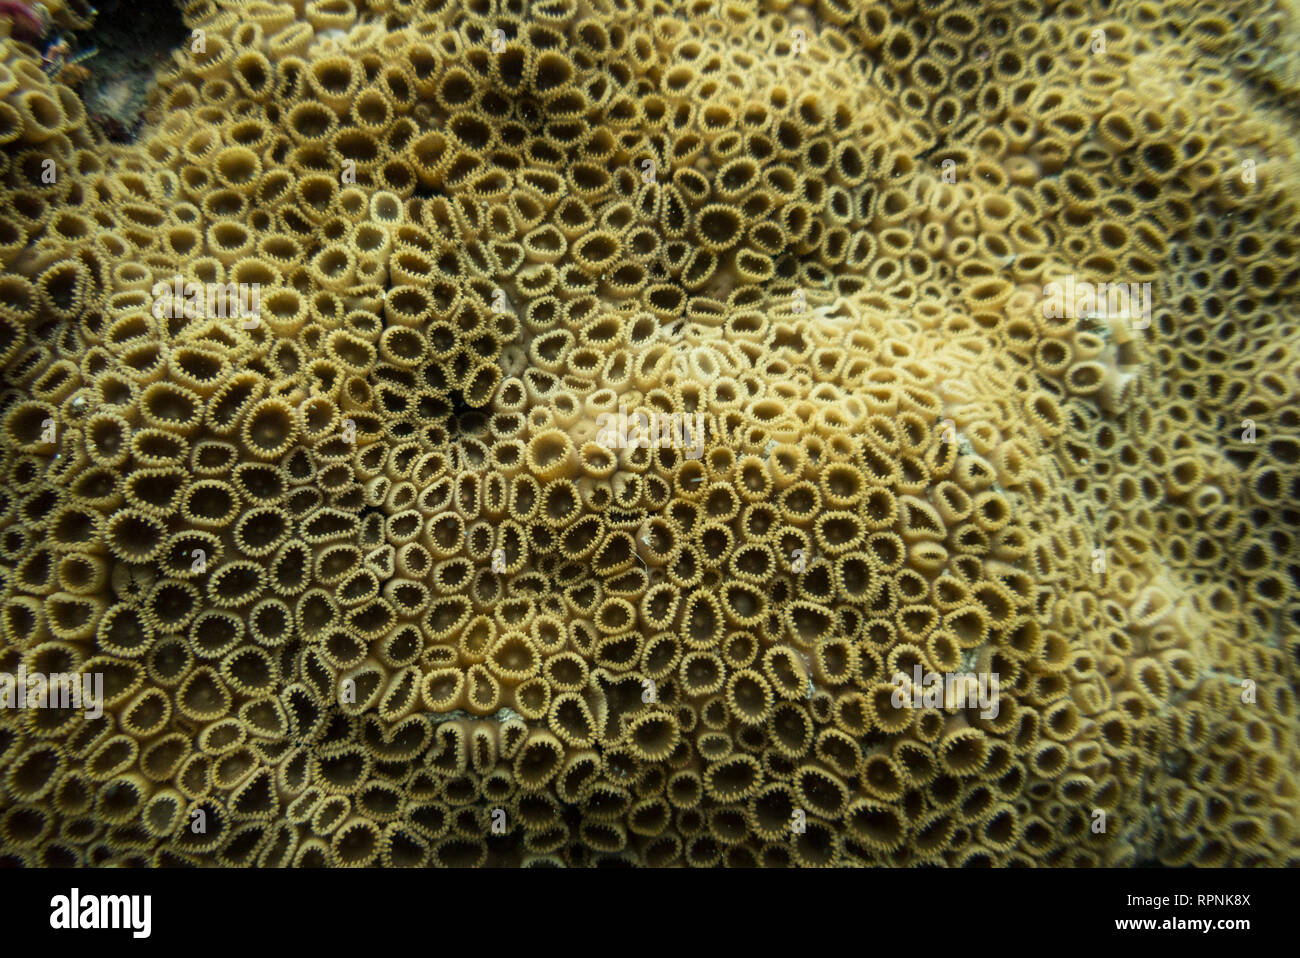 Palythoa caribaeorum coral from SE Brazil, Ilhabela. Stock Photo